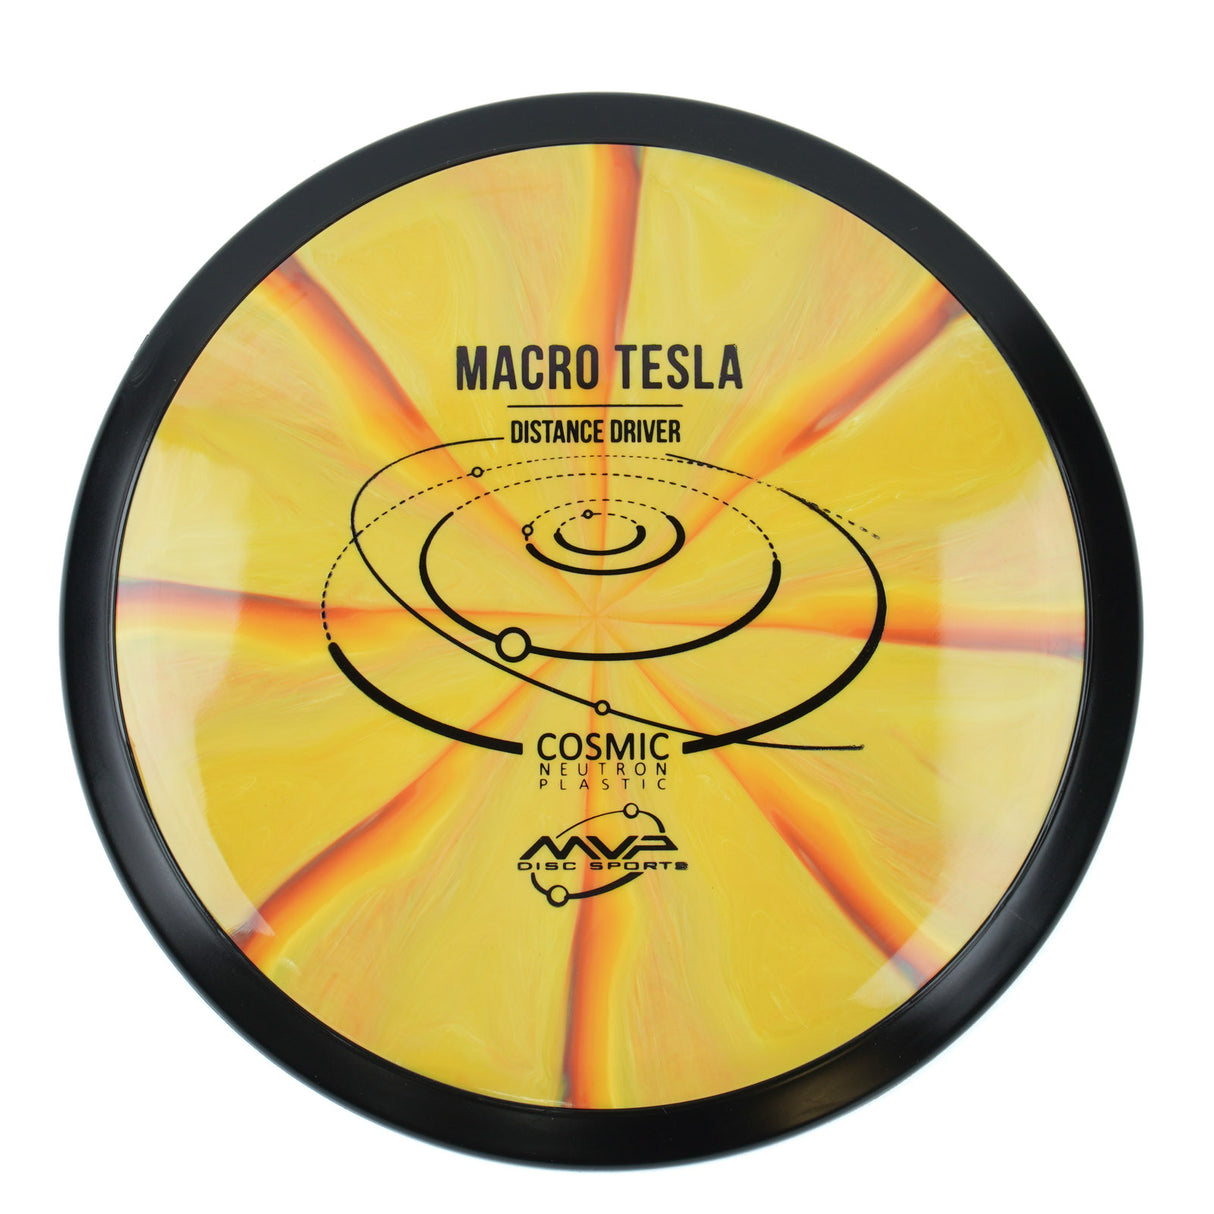 MVP Macro Tesla - Cosmic Neutron 81g | Style 0019